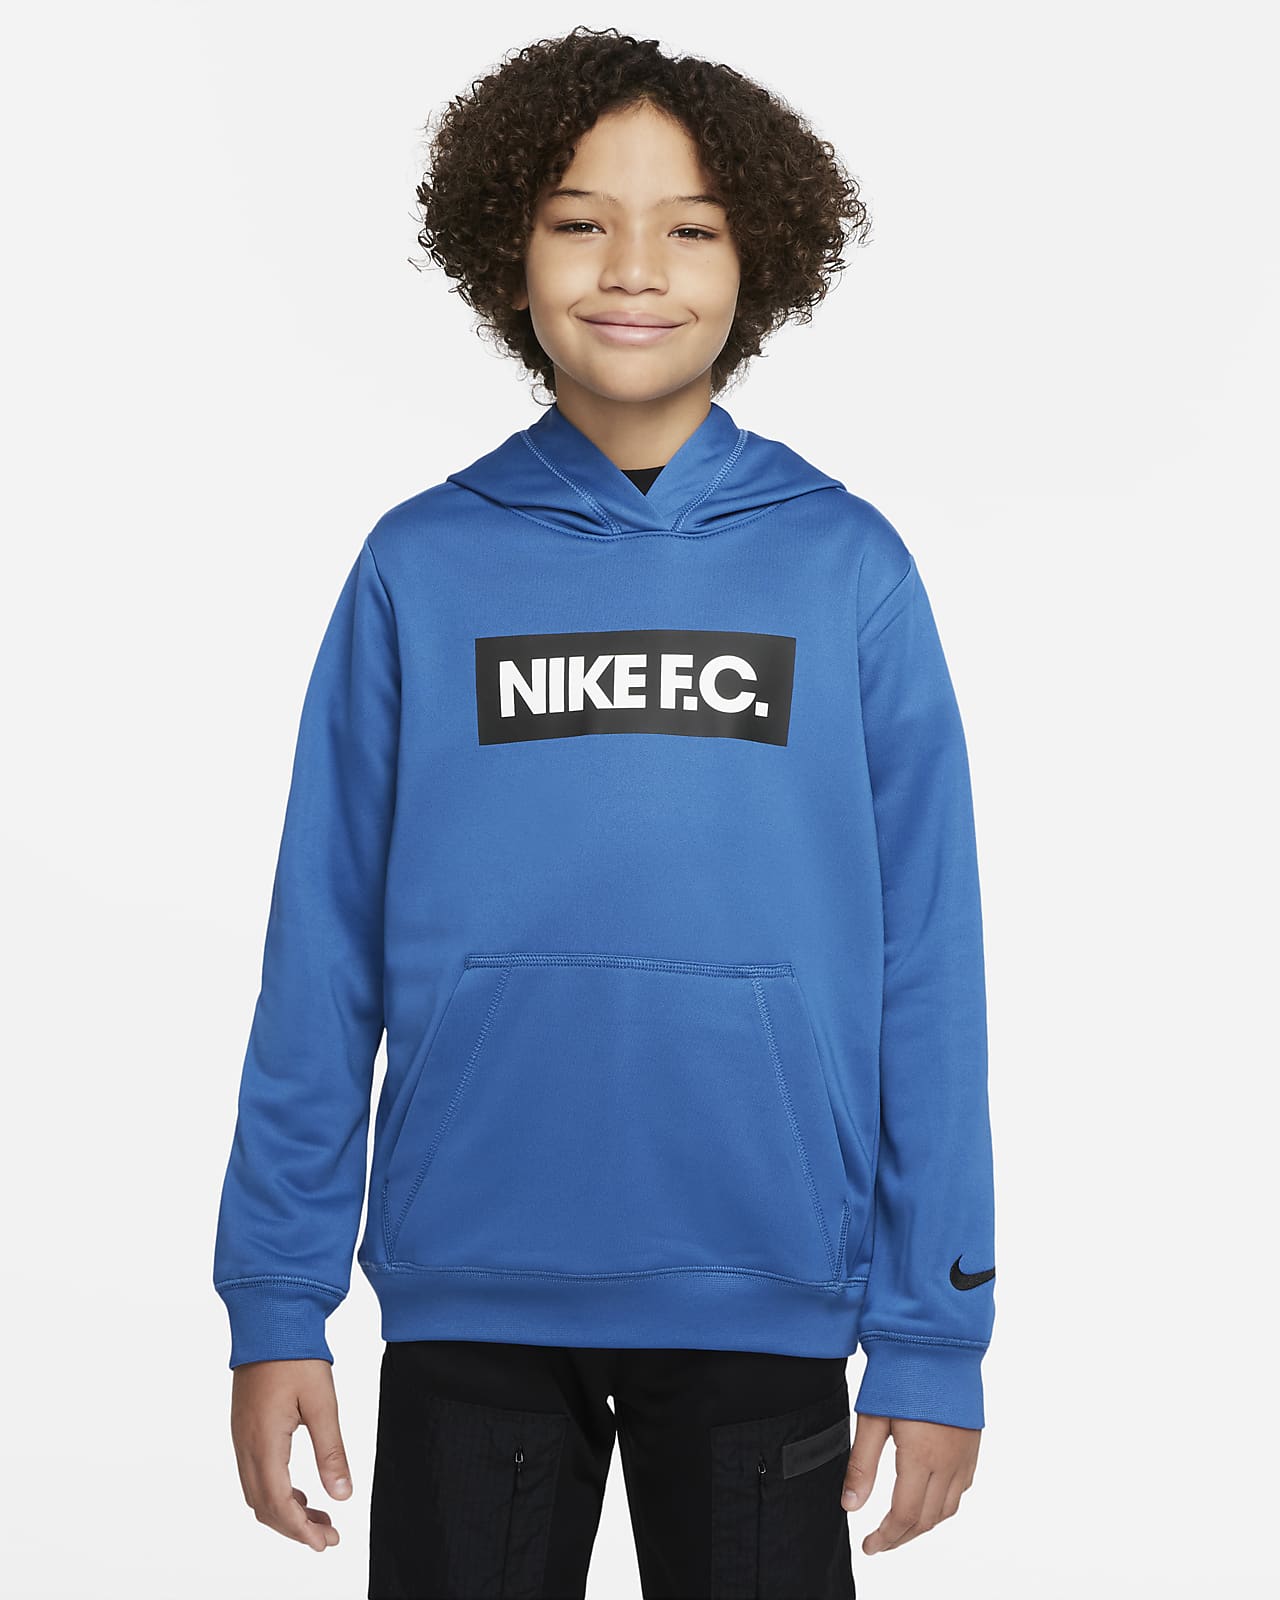 Bluza piłkarska z kapturem dla dużych dzieci Nike F.C.